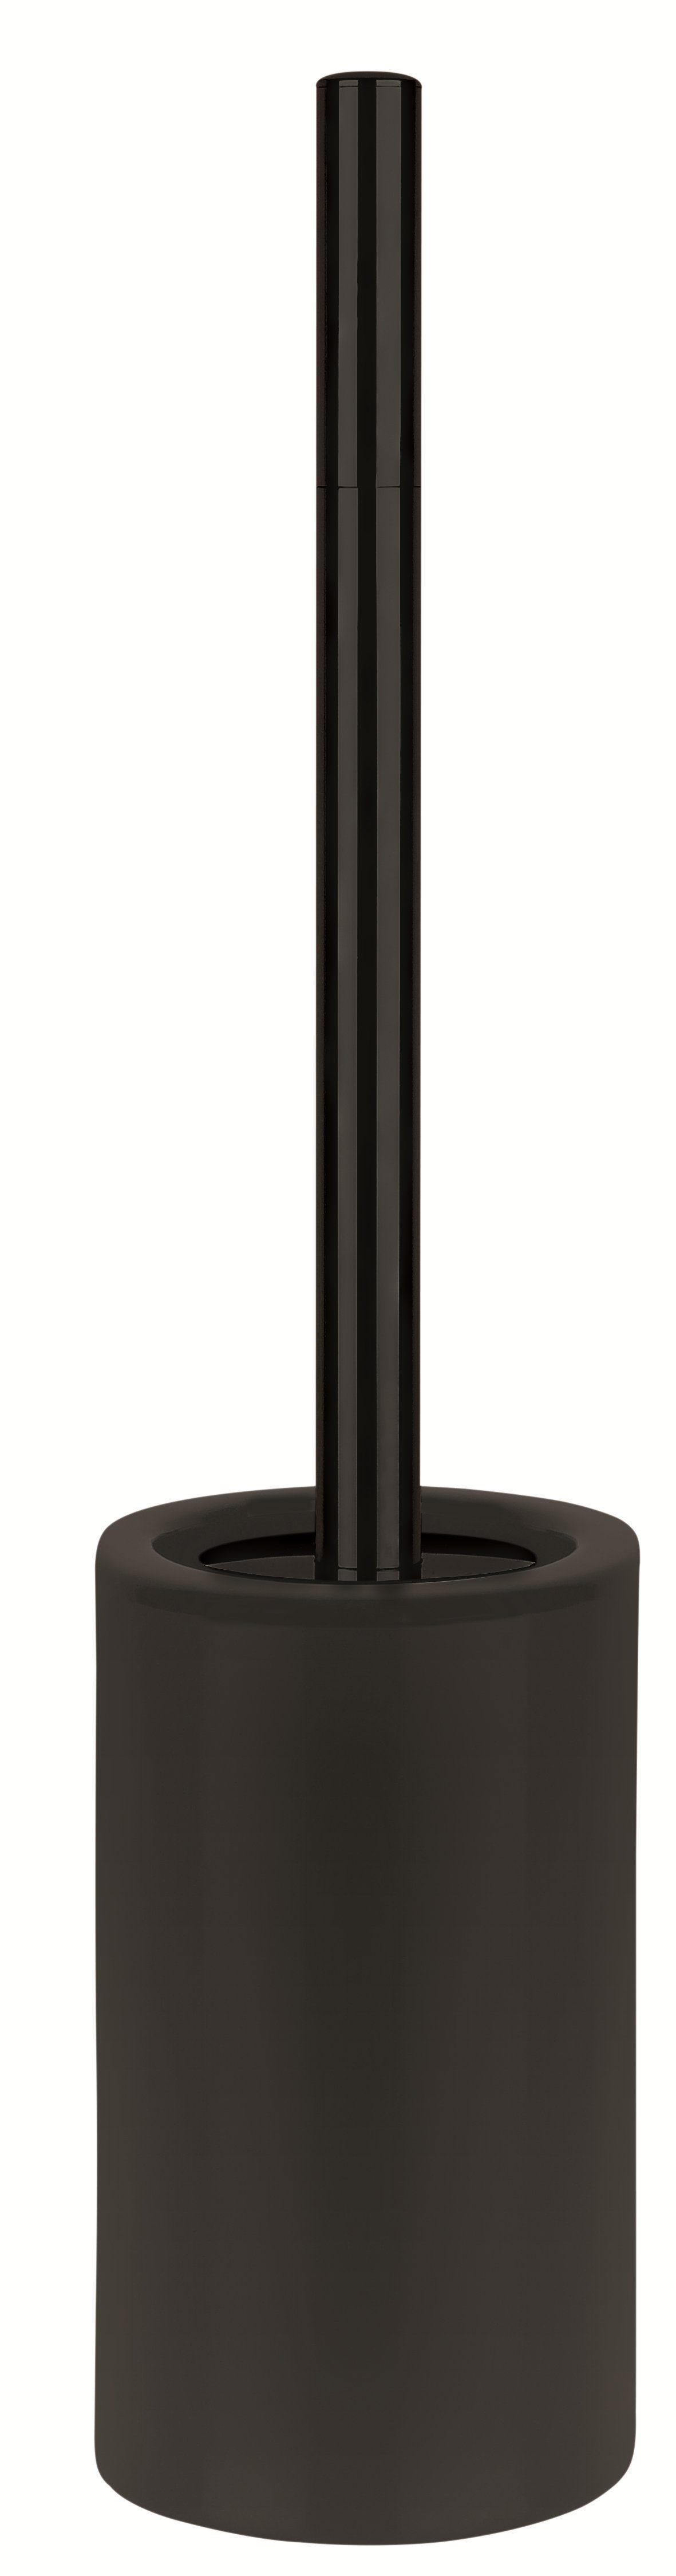 spirella Toilettenpapierhalter WC-Bürste TUBE-MATT, Toilettenbürste aus hochwertiger Keramik, schwarz, elegante Matt-Optik